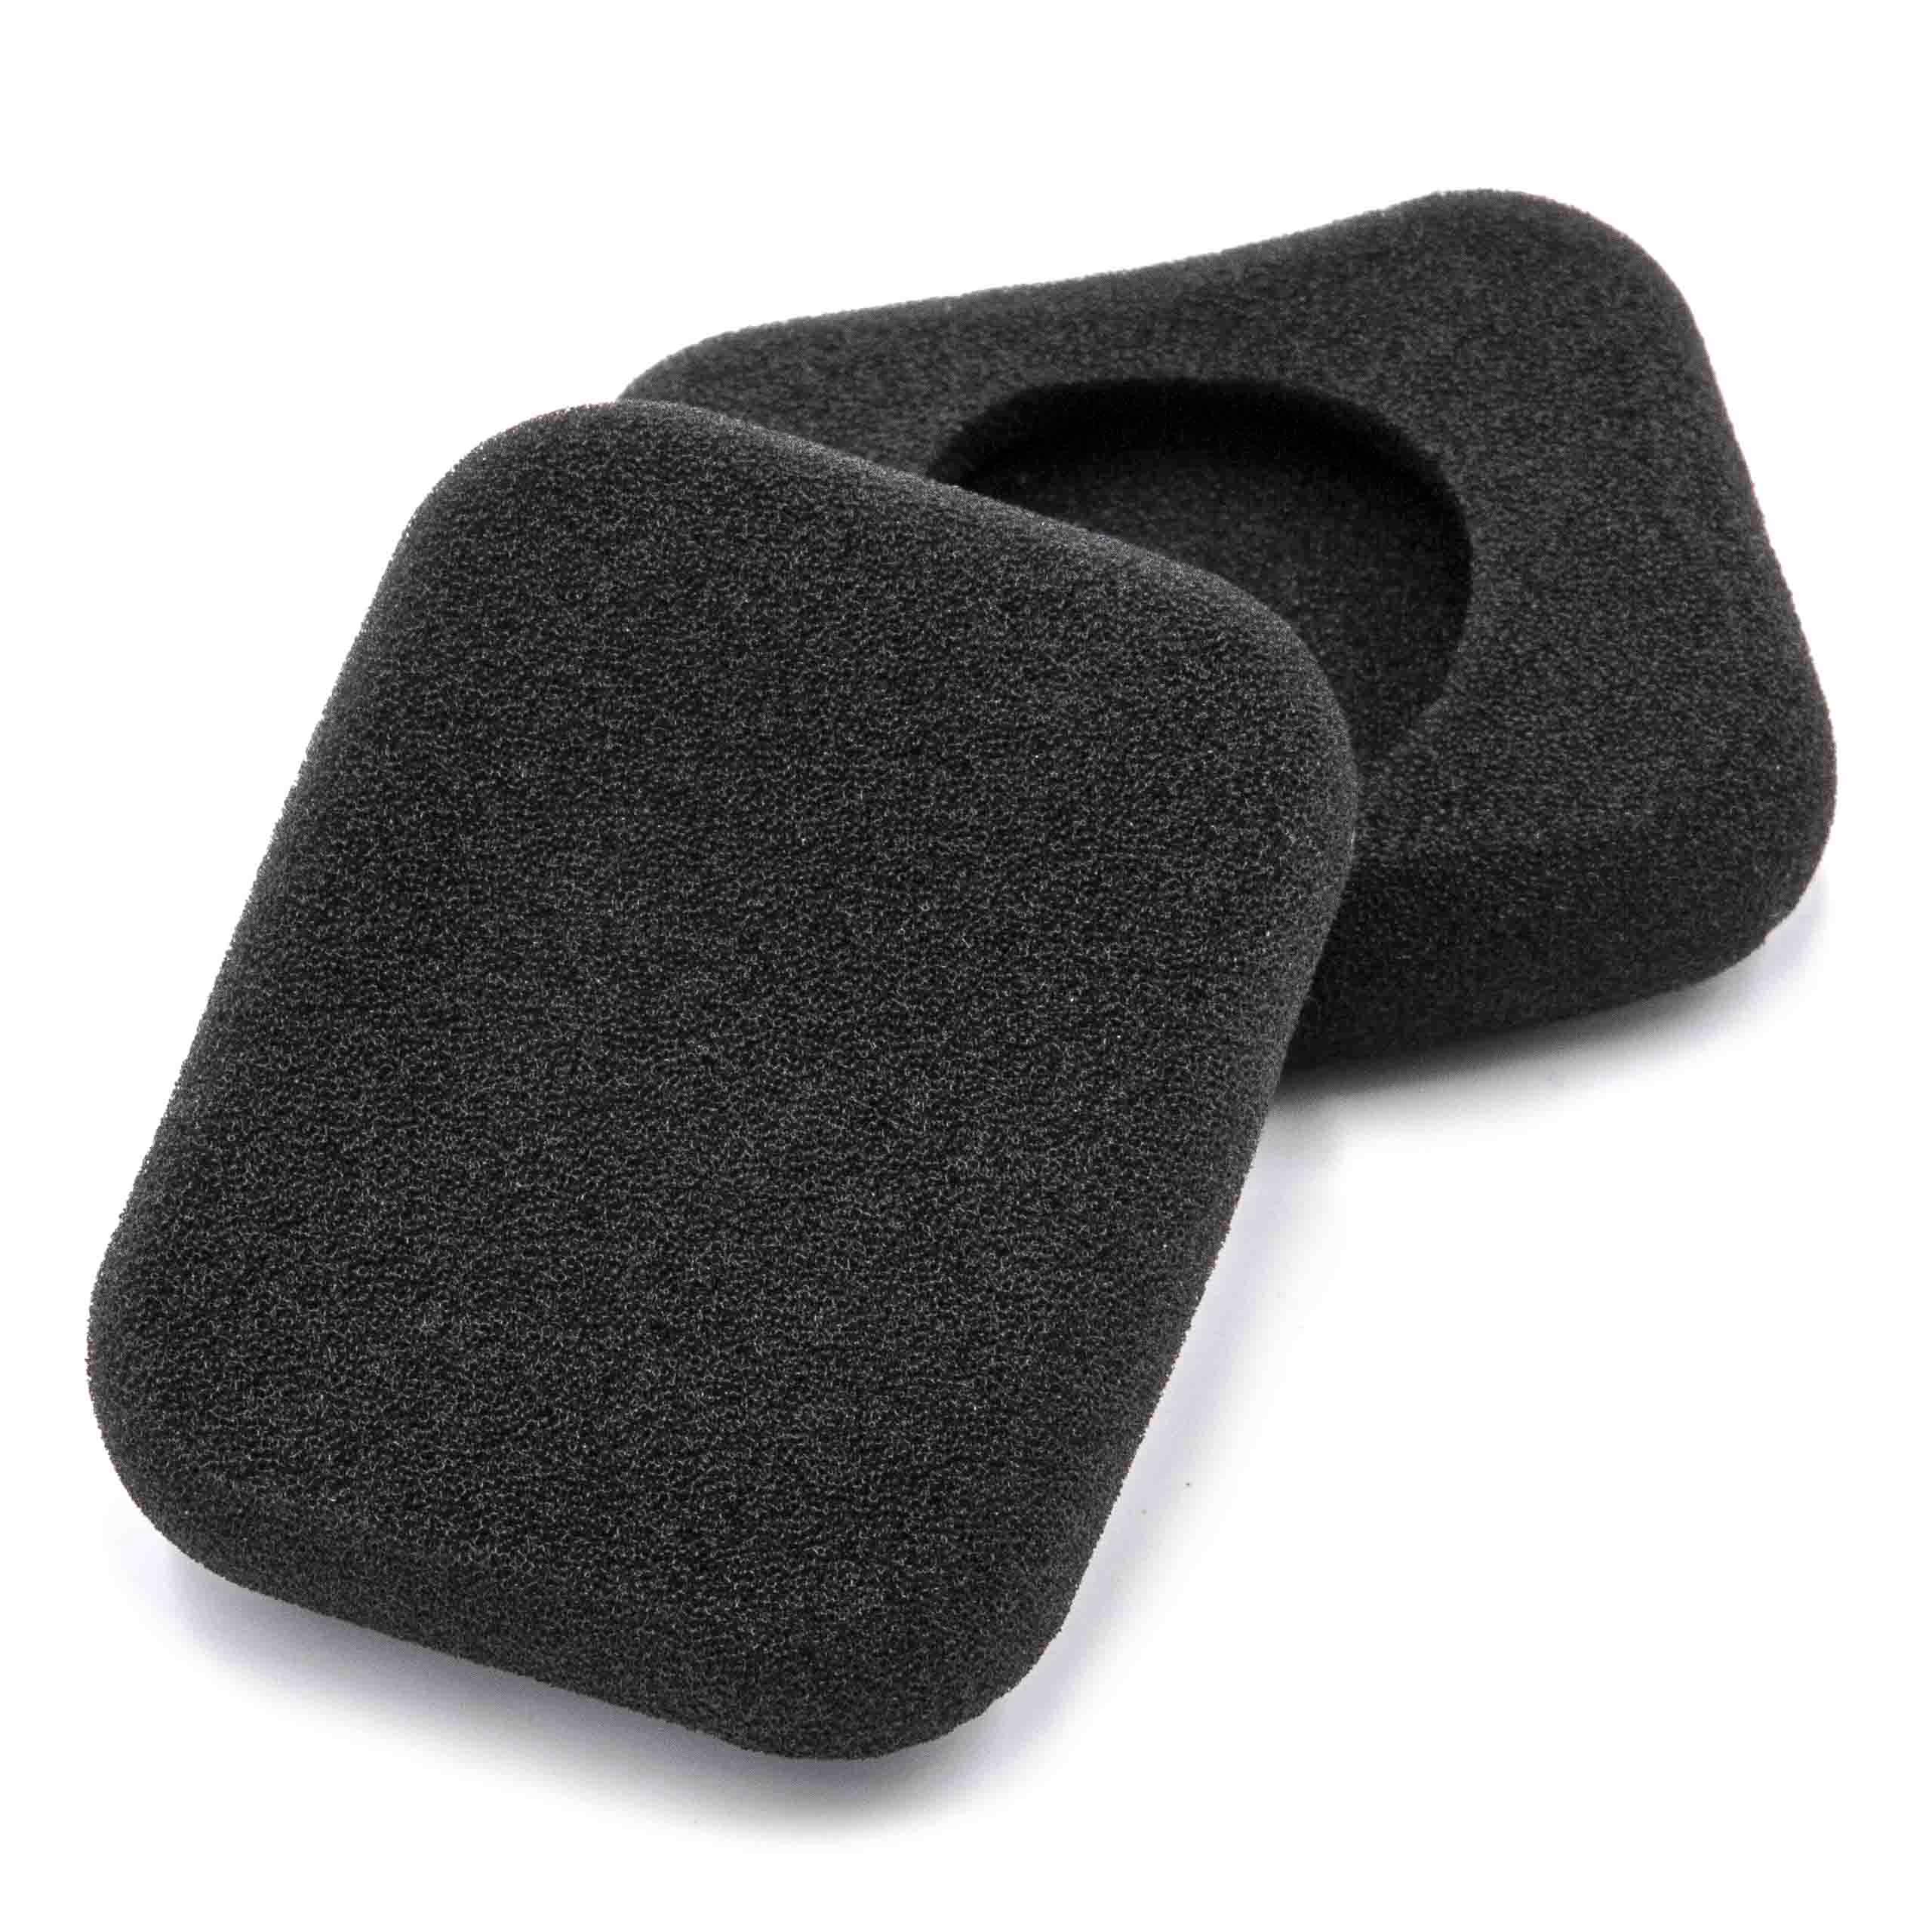 2x Coussinets d'oreille pour casque Bang & Olufsen Form - mousse noir